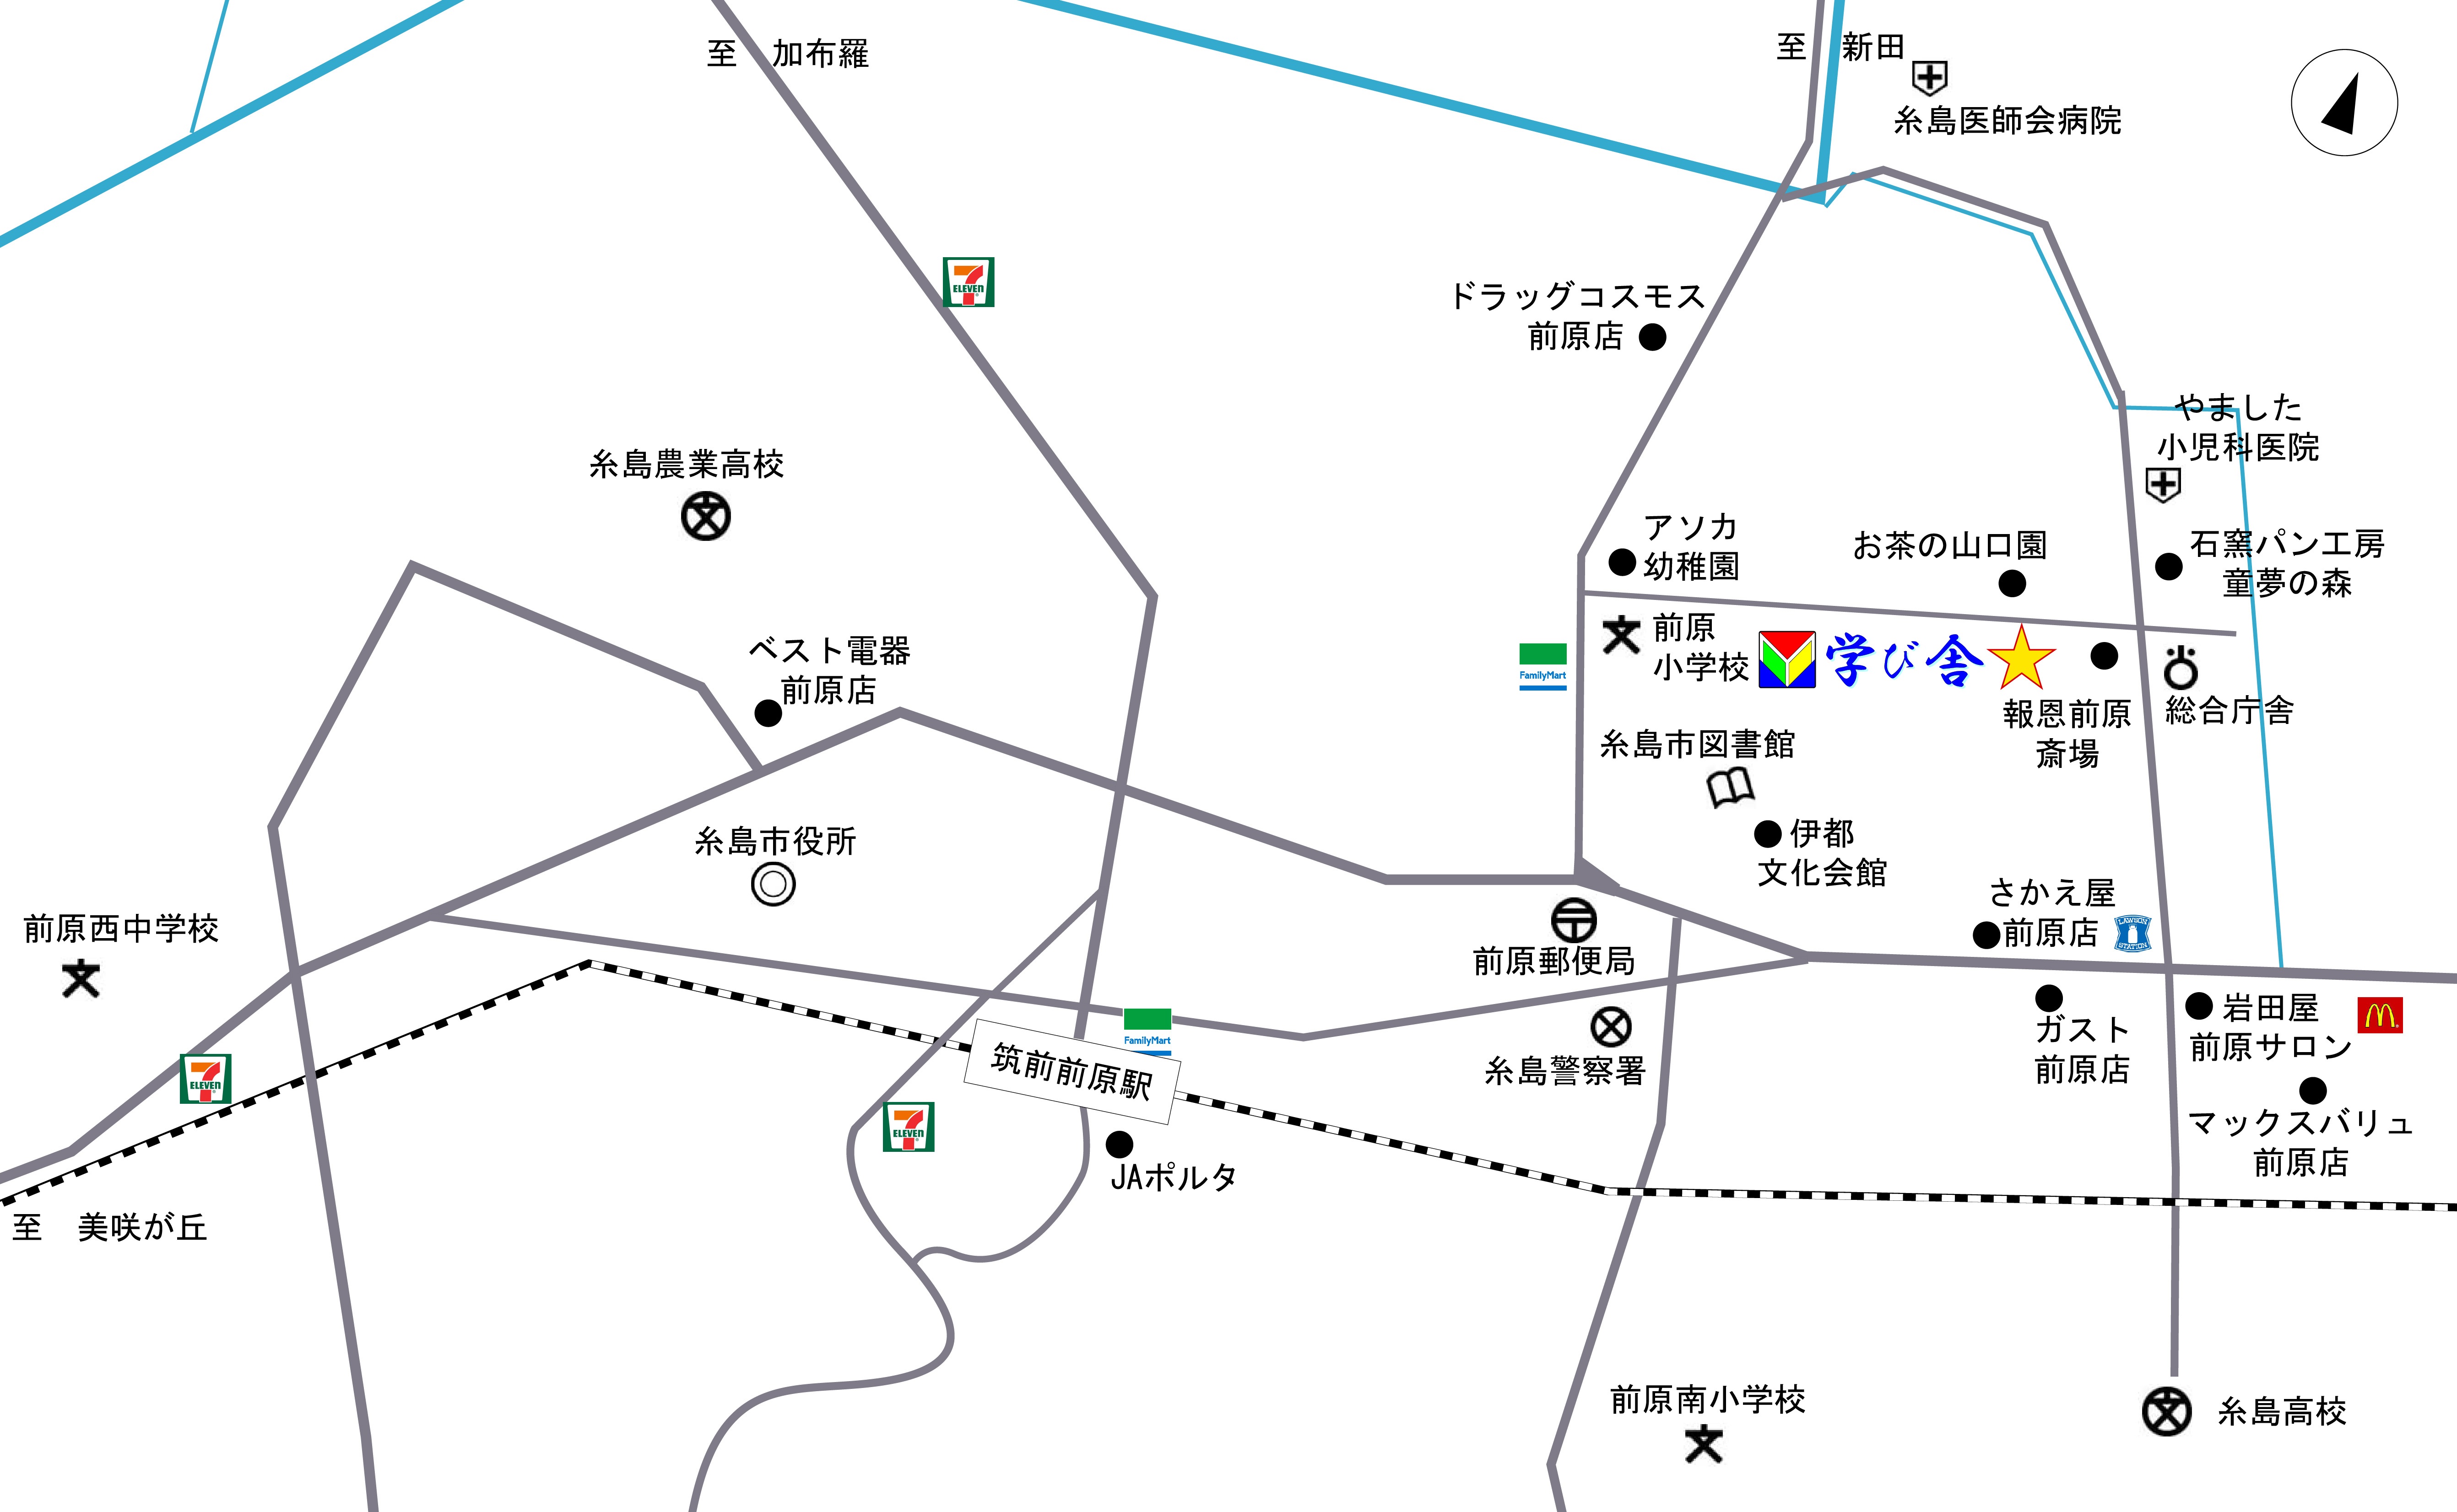 学び舎地図2.ai